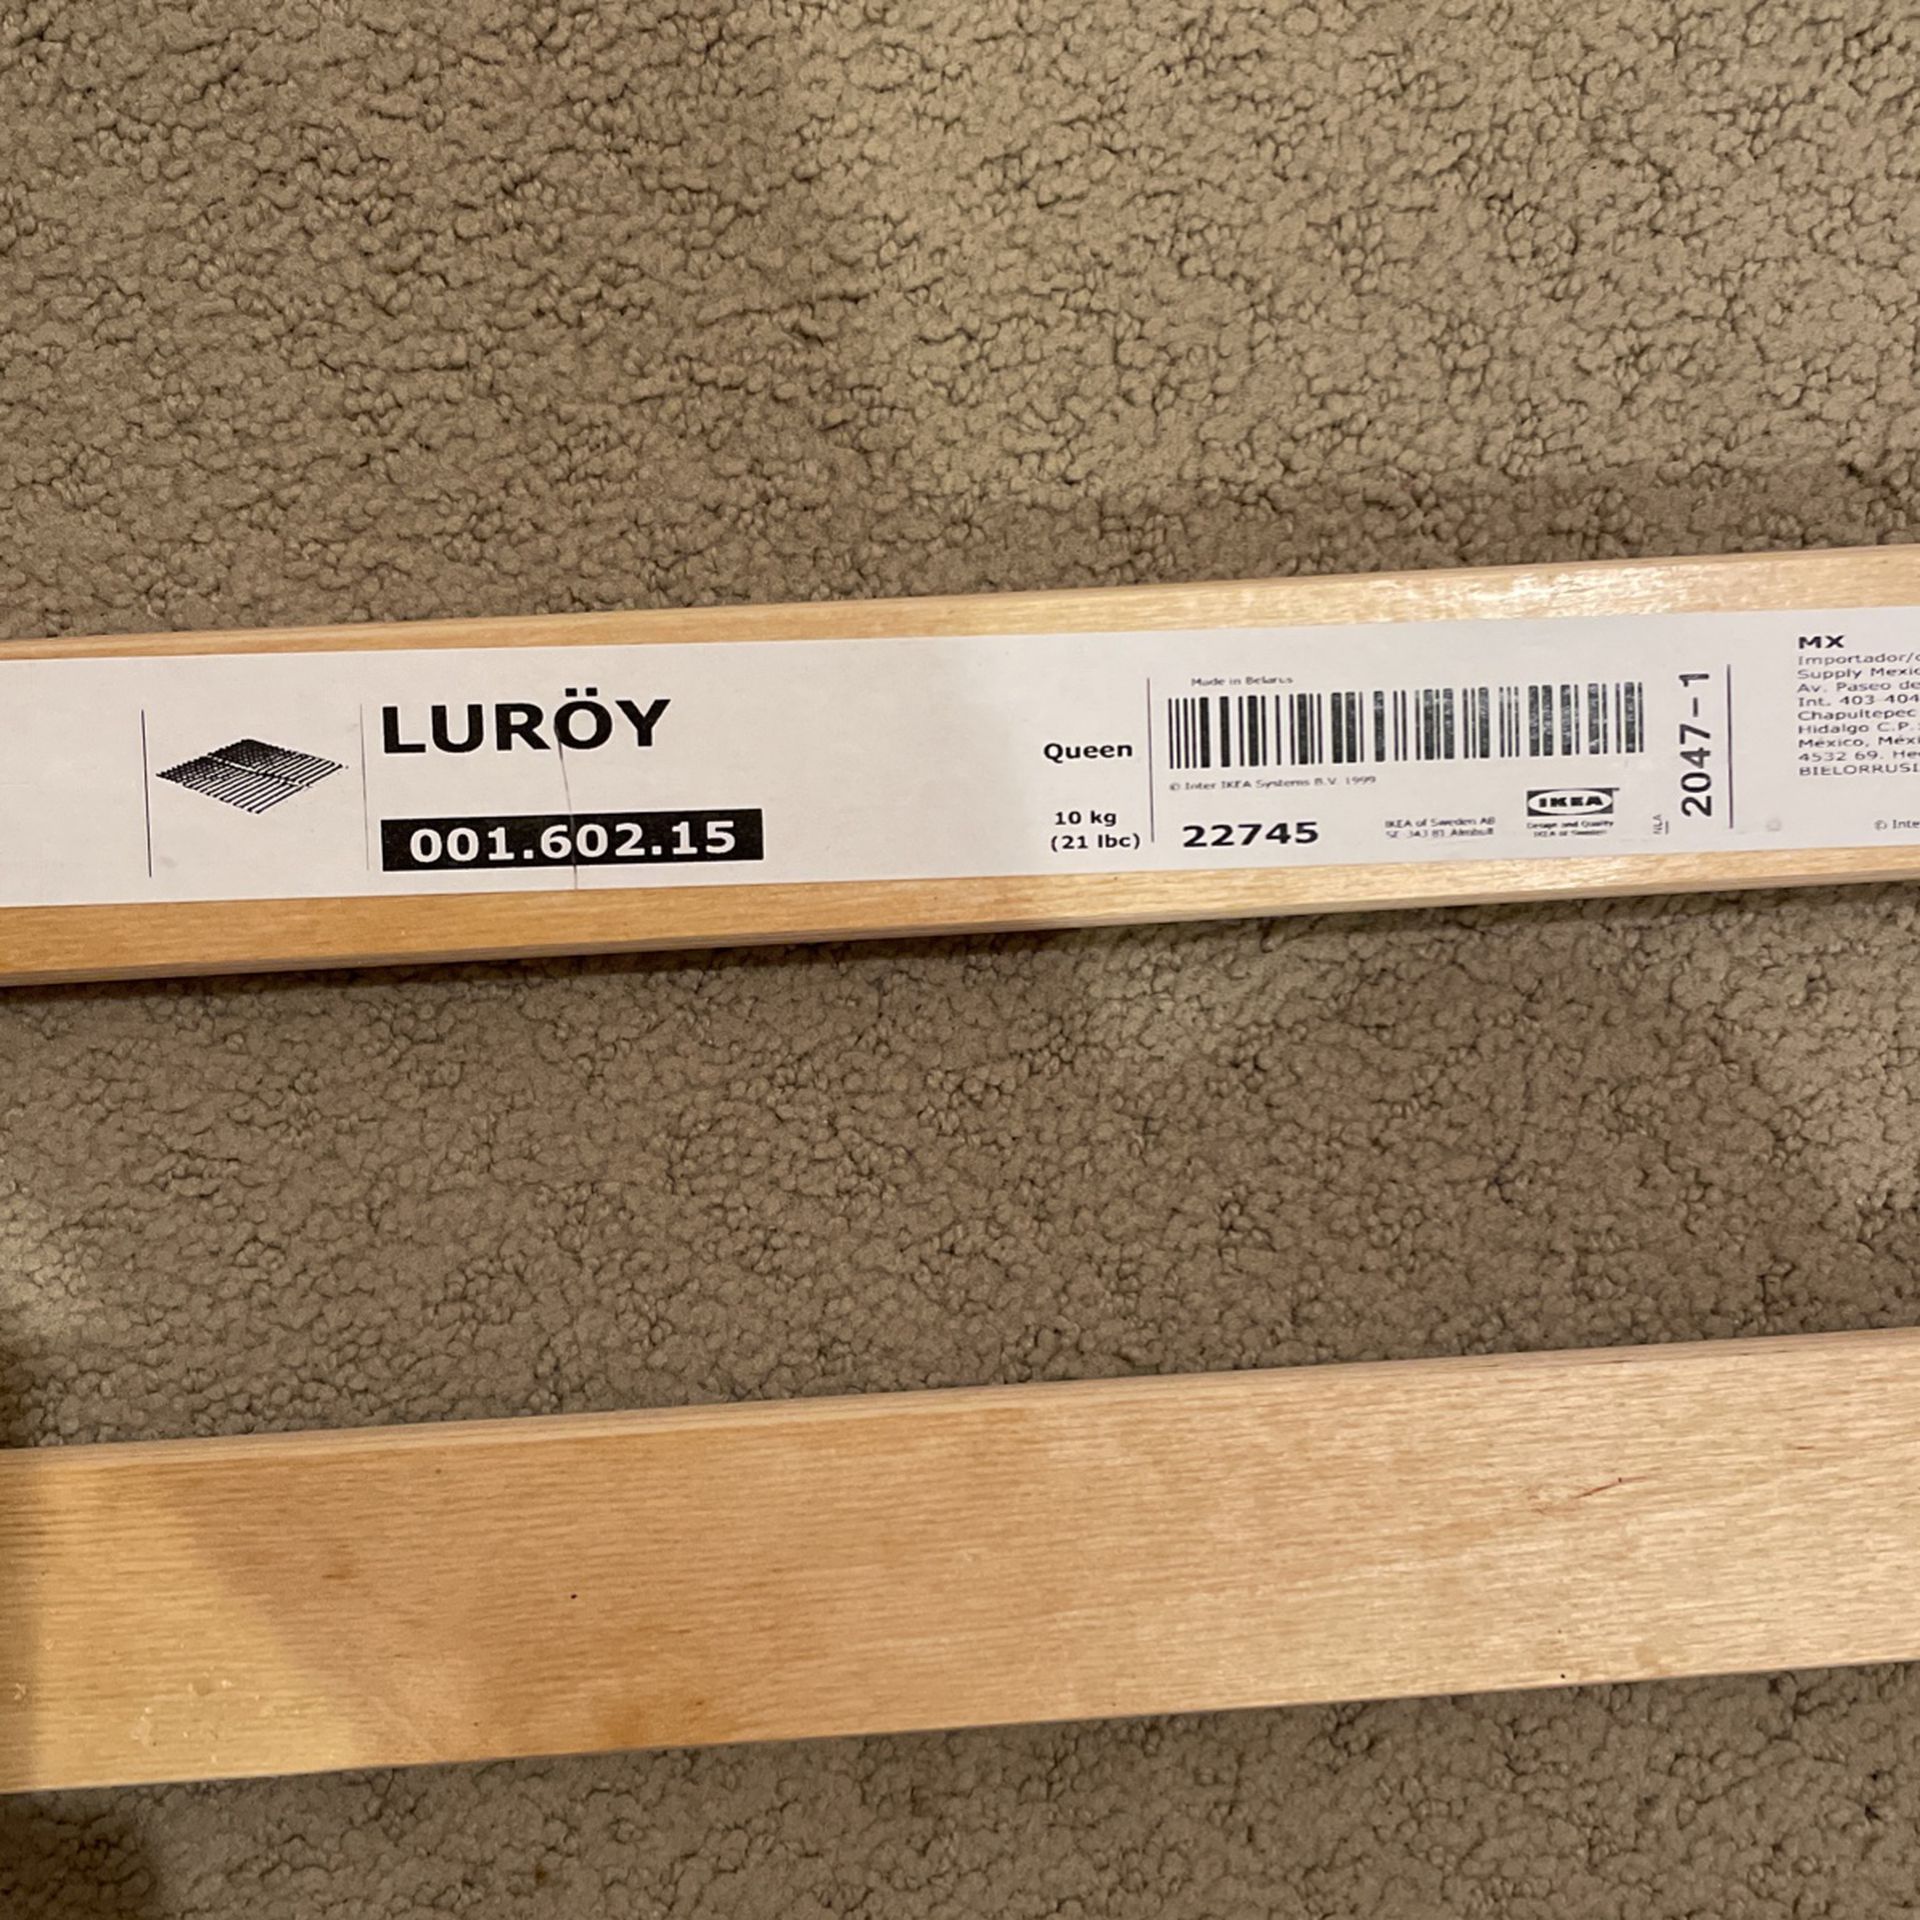 IKEA Queen Bed Slats Luroy 001.602.15 